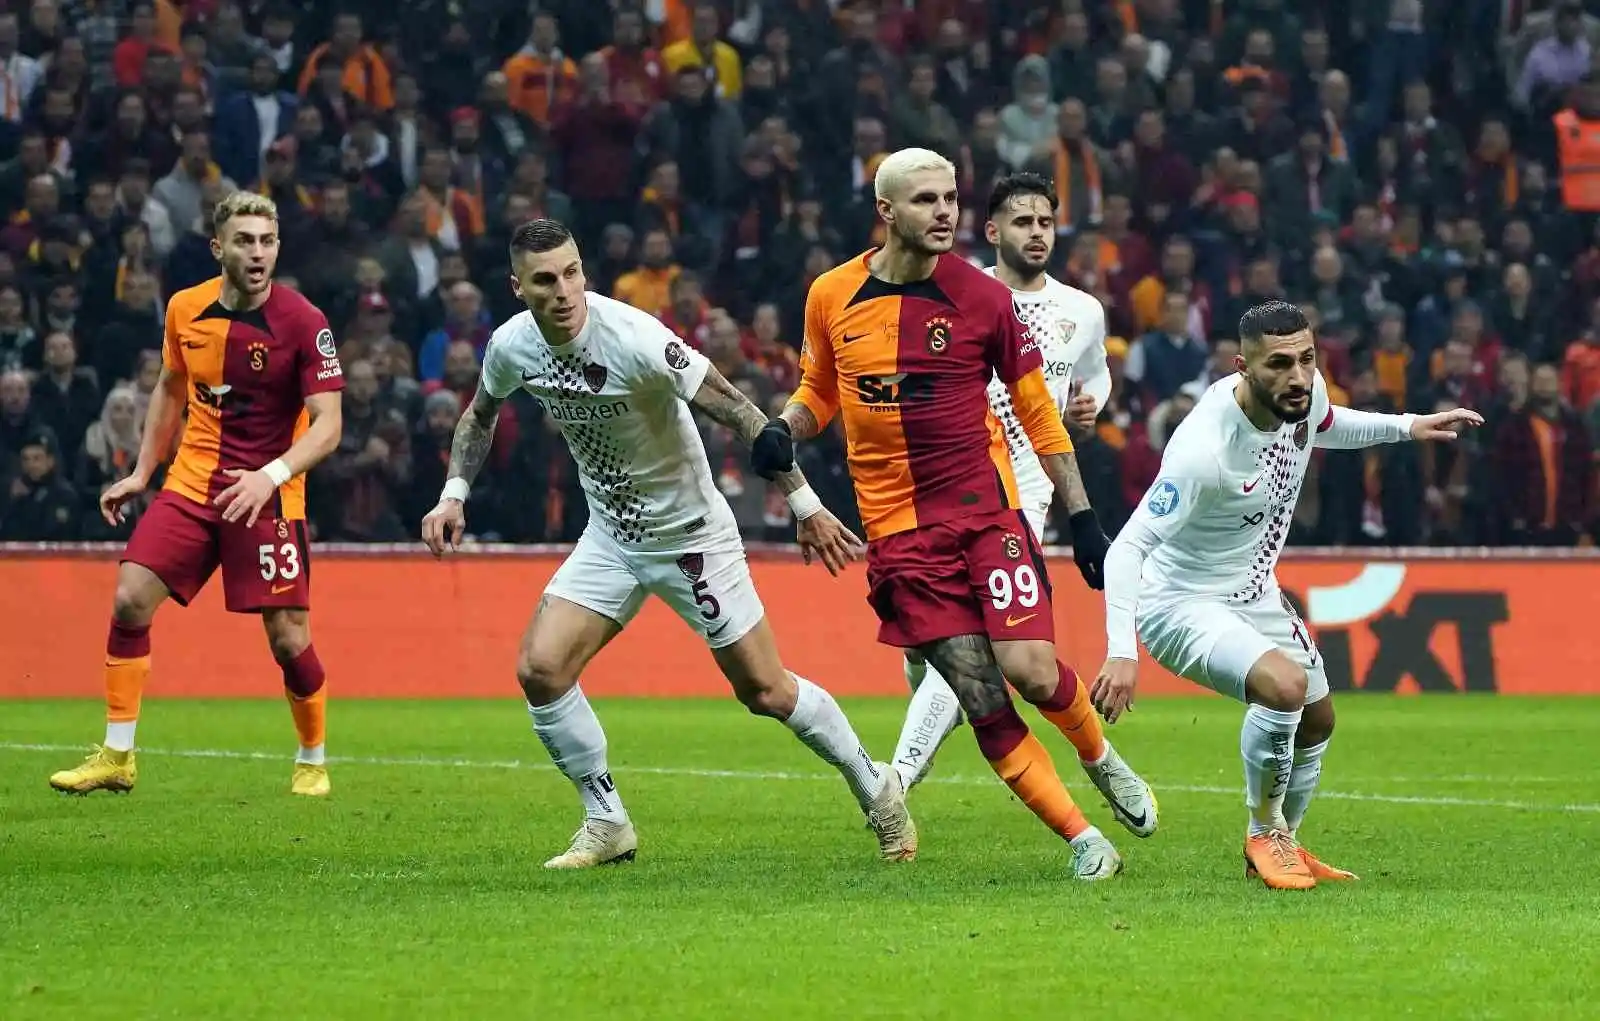 Spor Toto Süper Lig: Galatasaray: 1 - Hatayspor: 0 (Maç devam ediyor)
